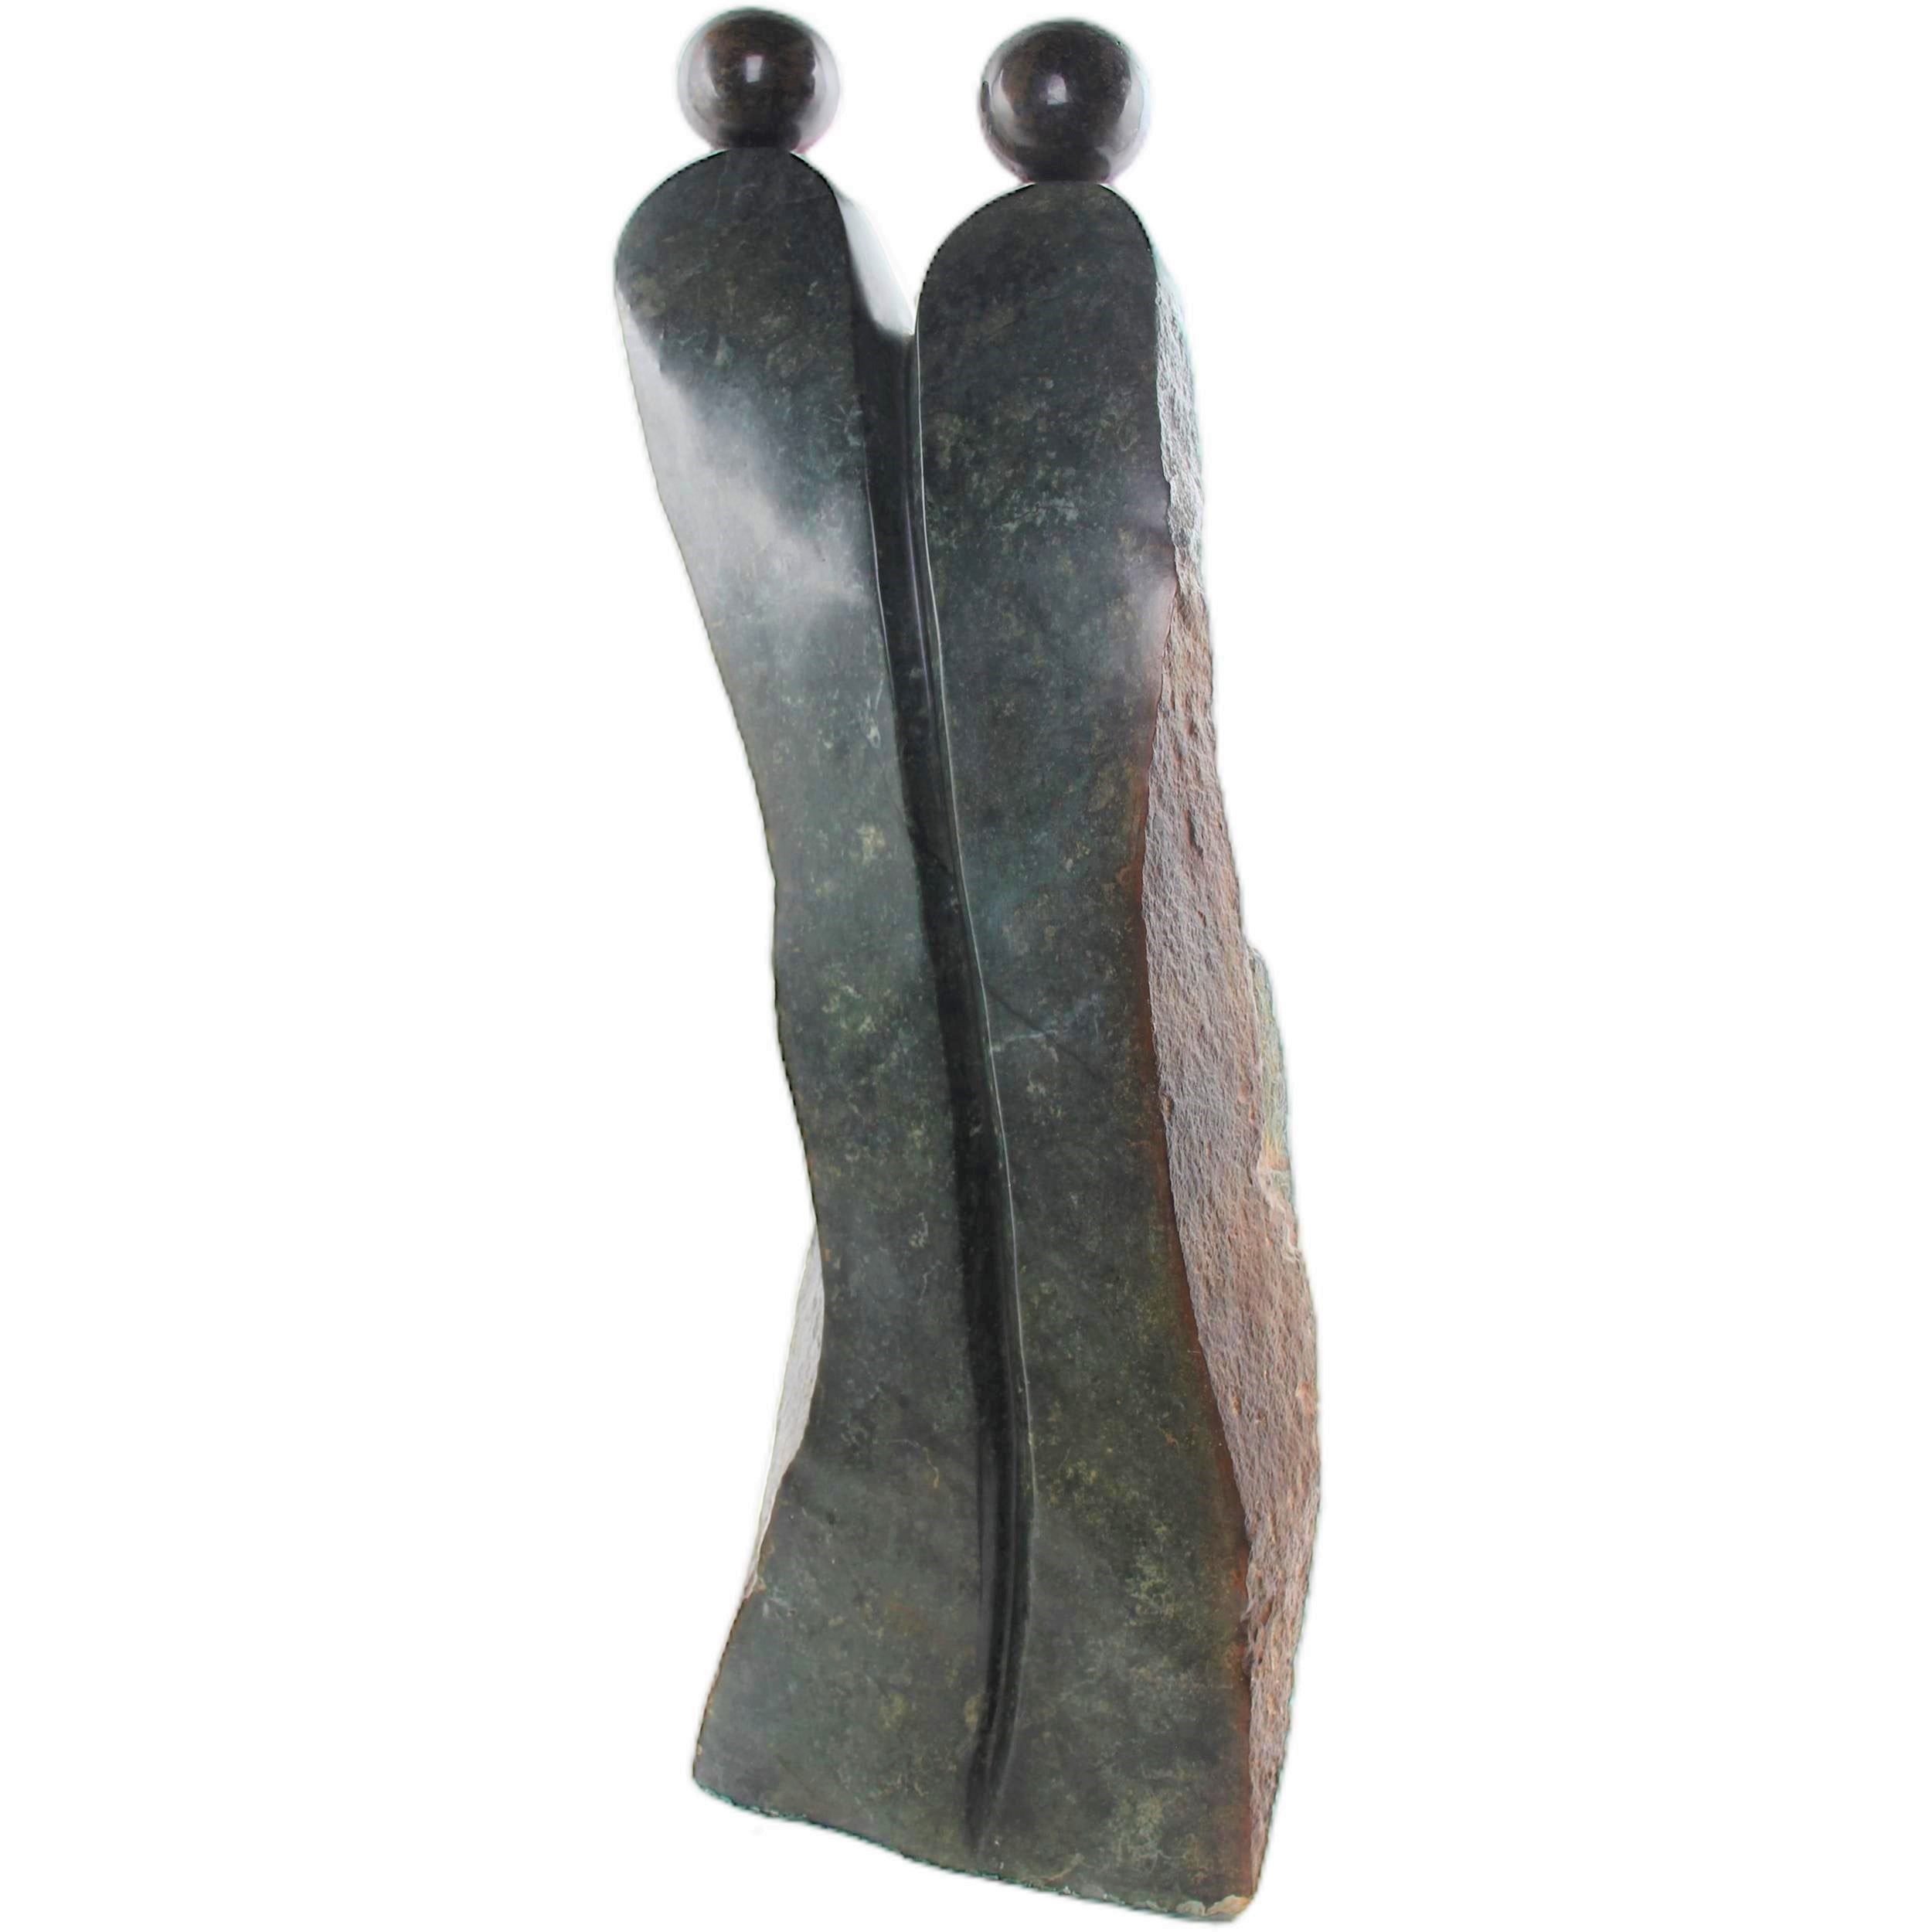 Shona Tribe Opal Stone Lovers ~38.2" Tall